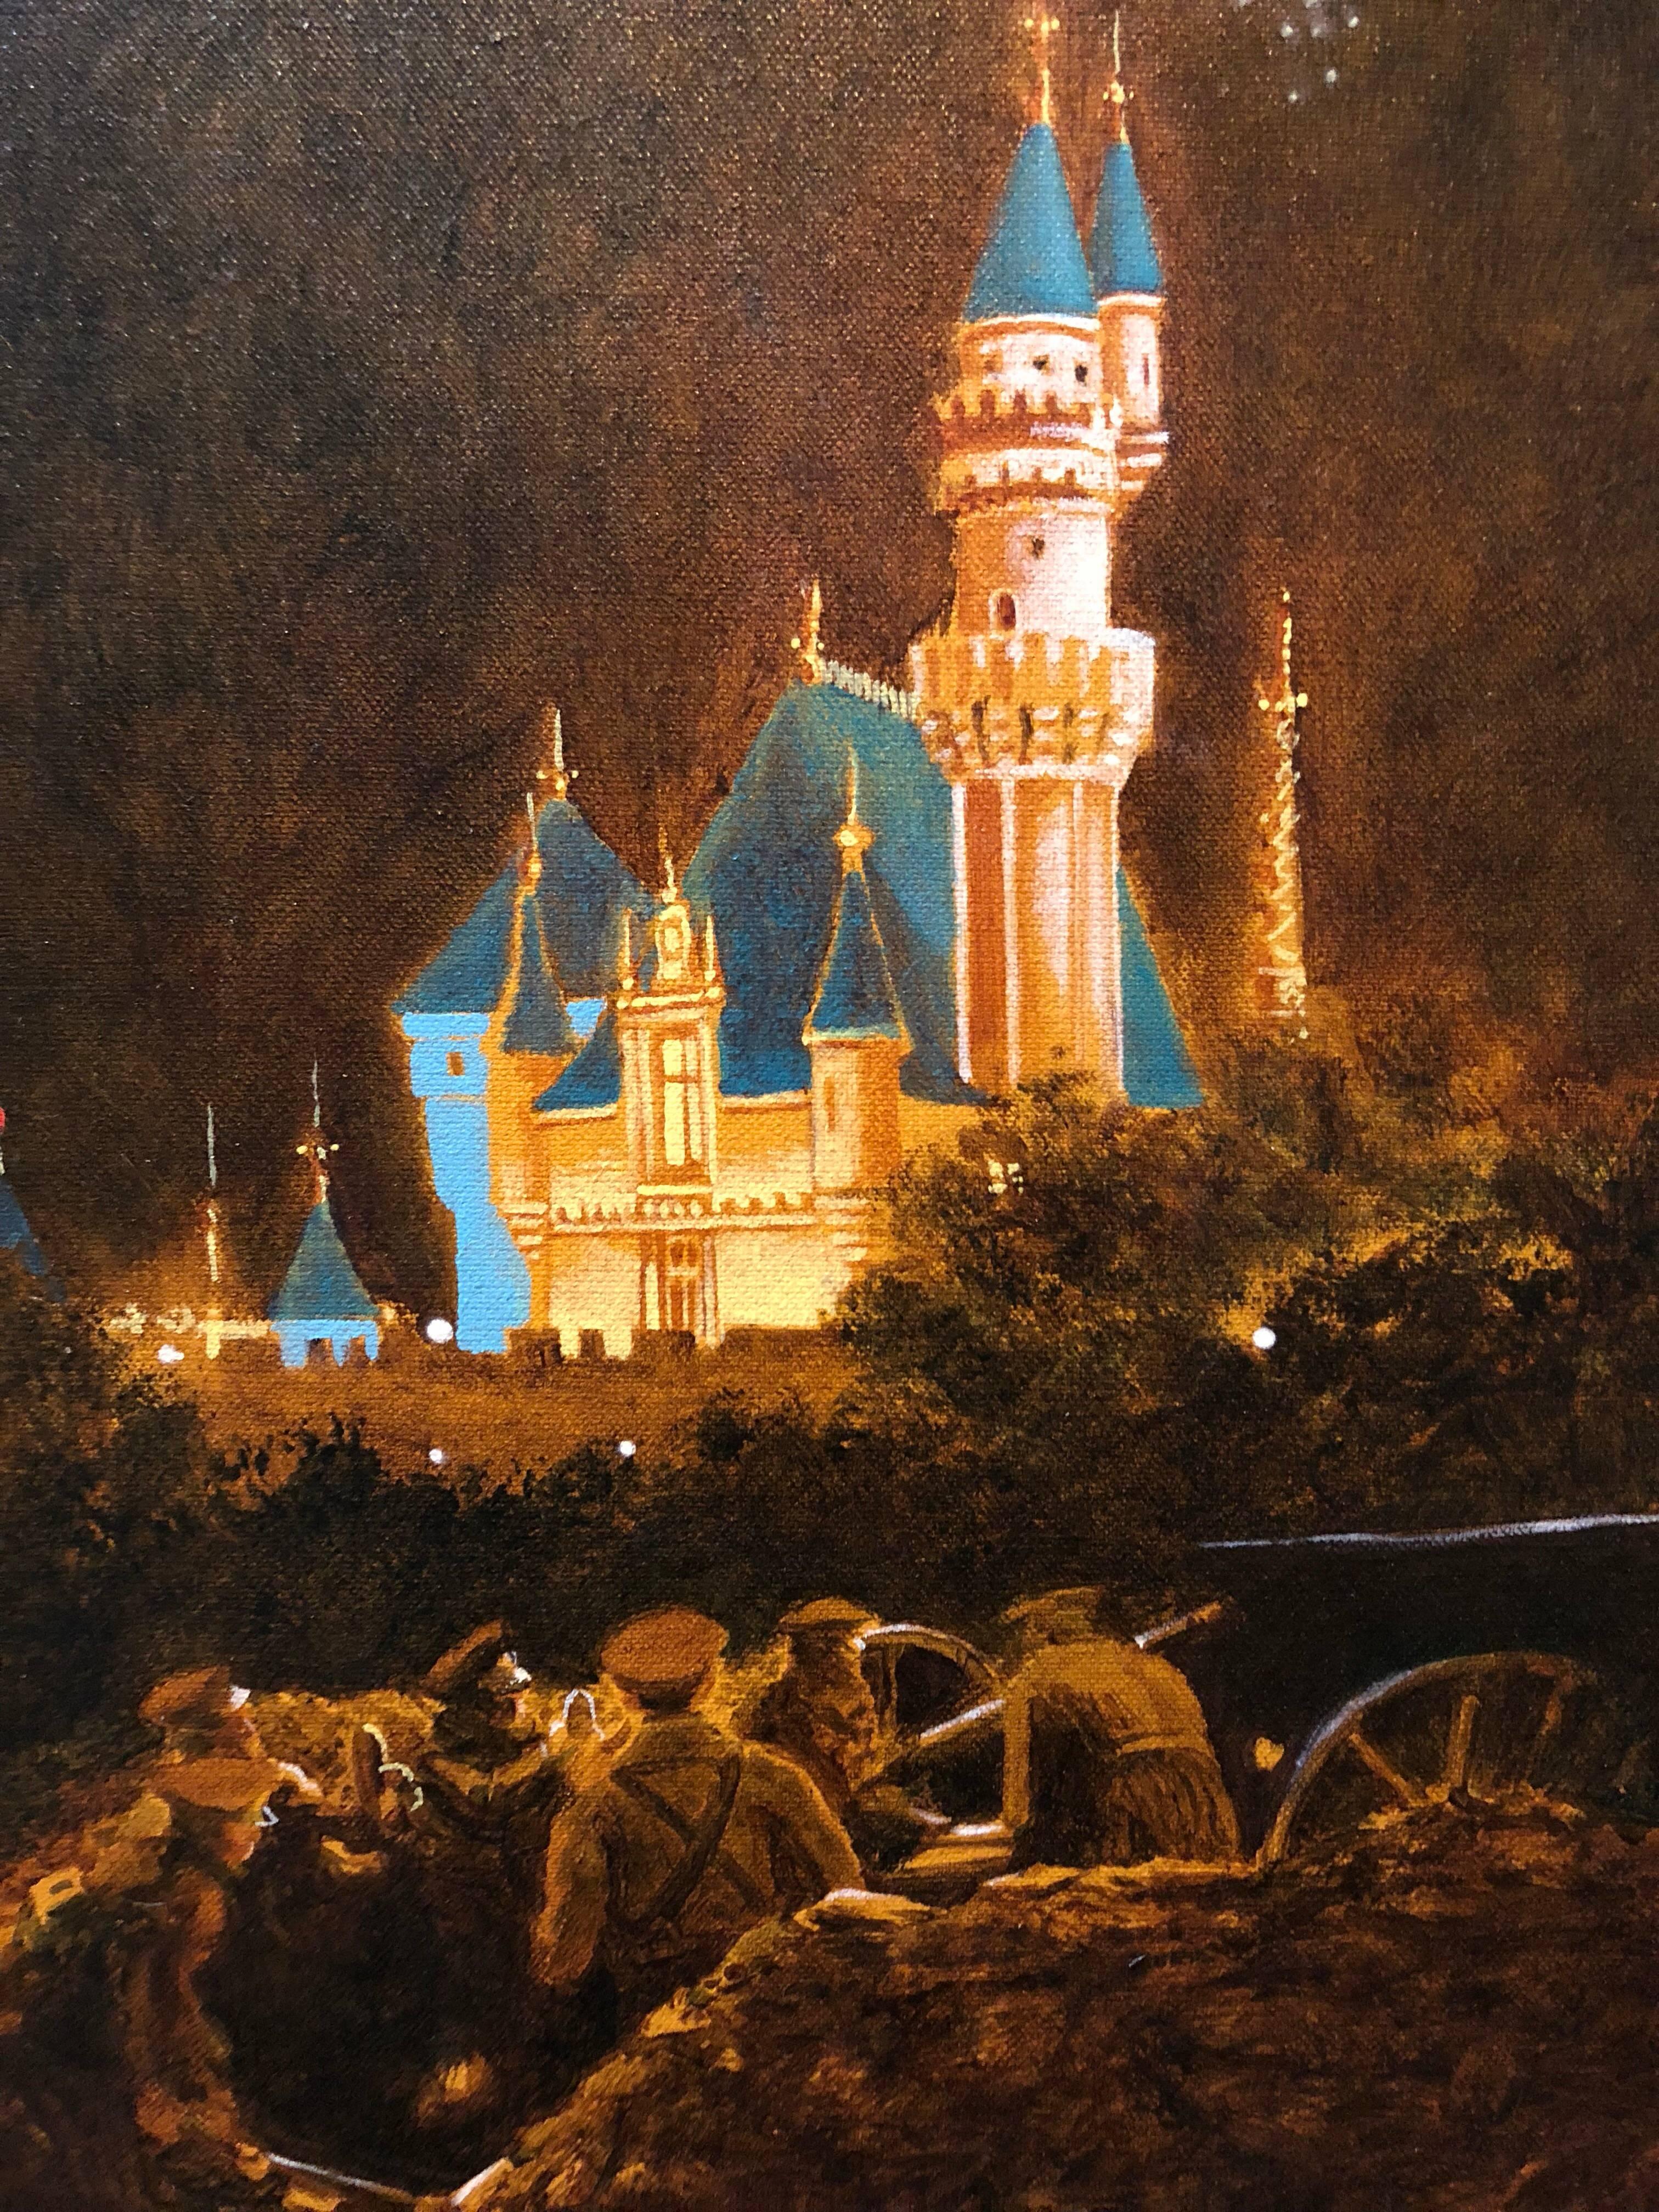 Landscape Painting John Bowman - Peinture à l'huile - Scène de nuit avec château et soldats, octobre